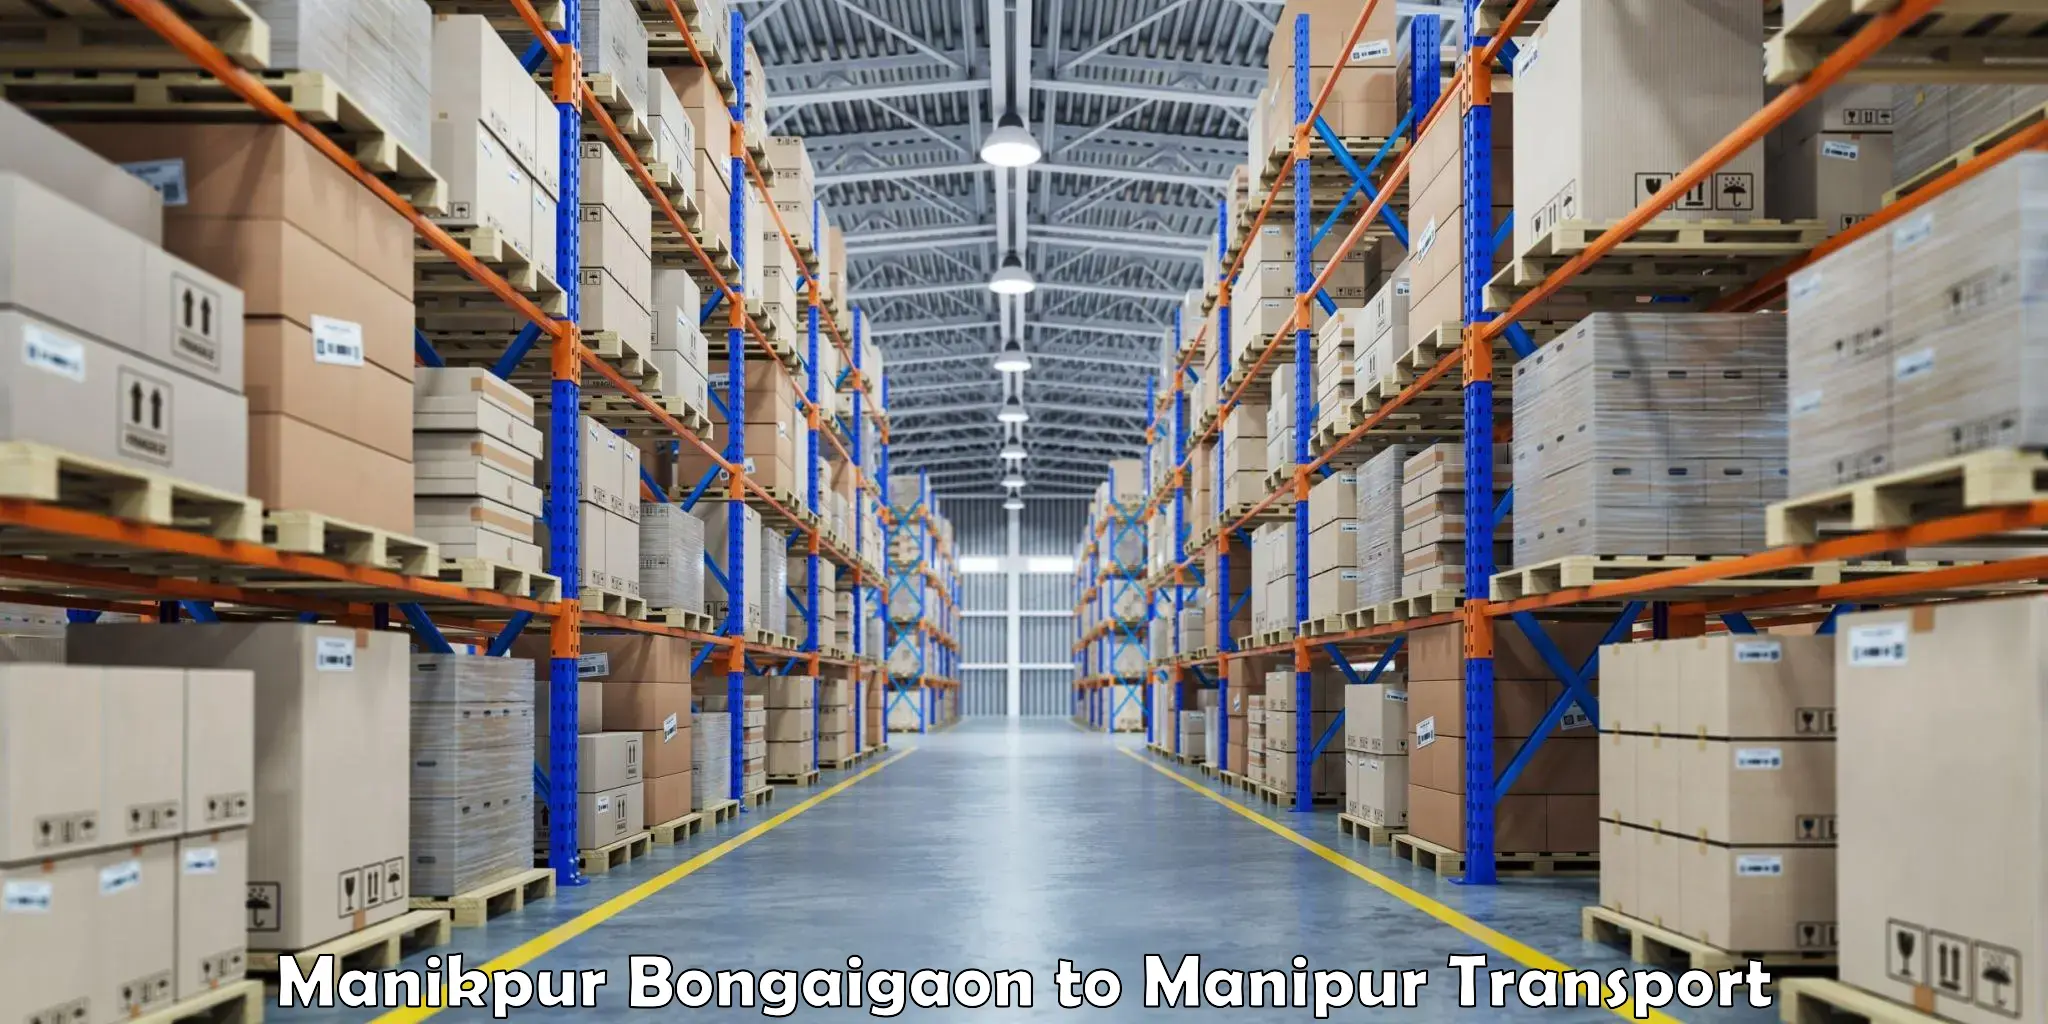 Lorry transport service Manikpur Bongaigaon to Manipur